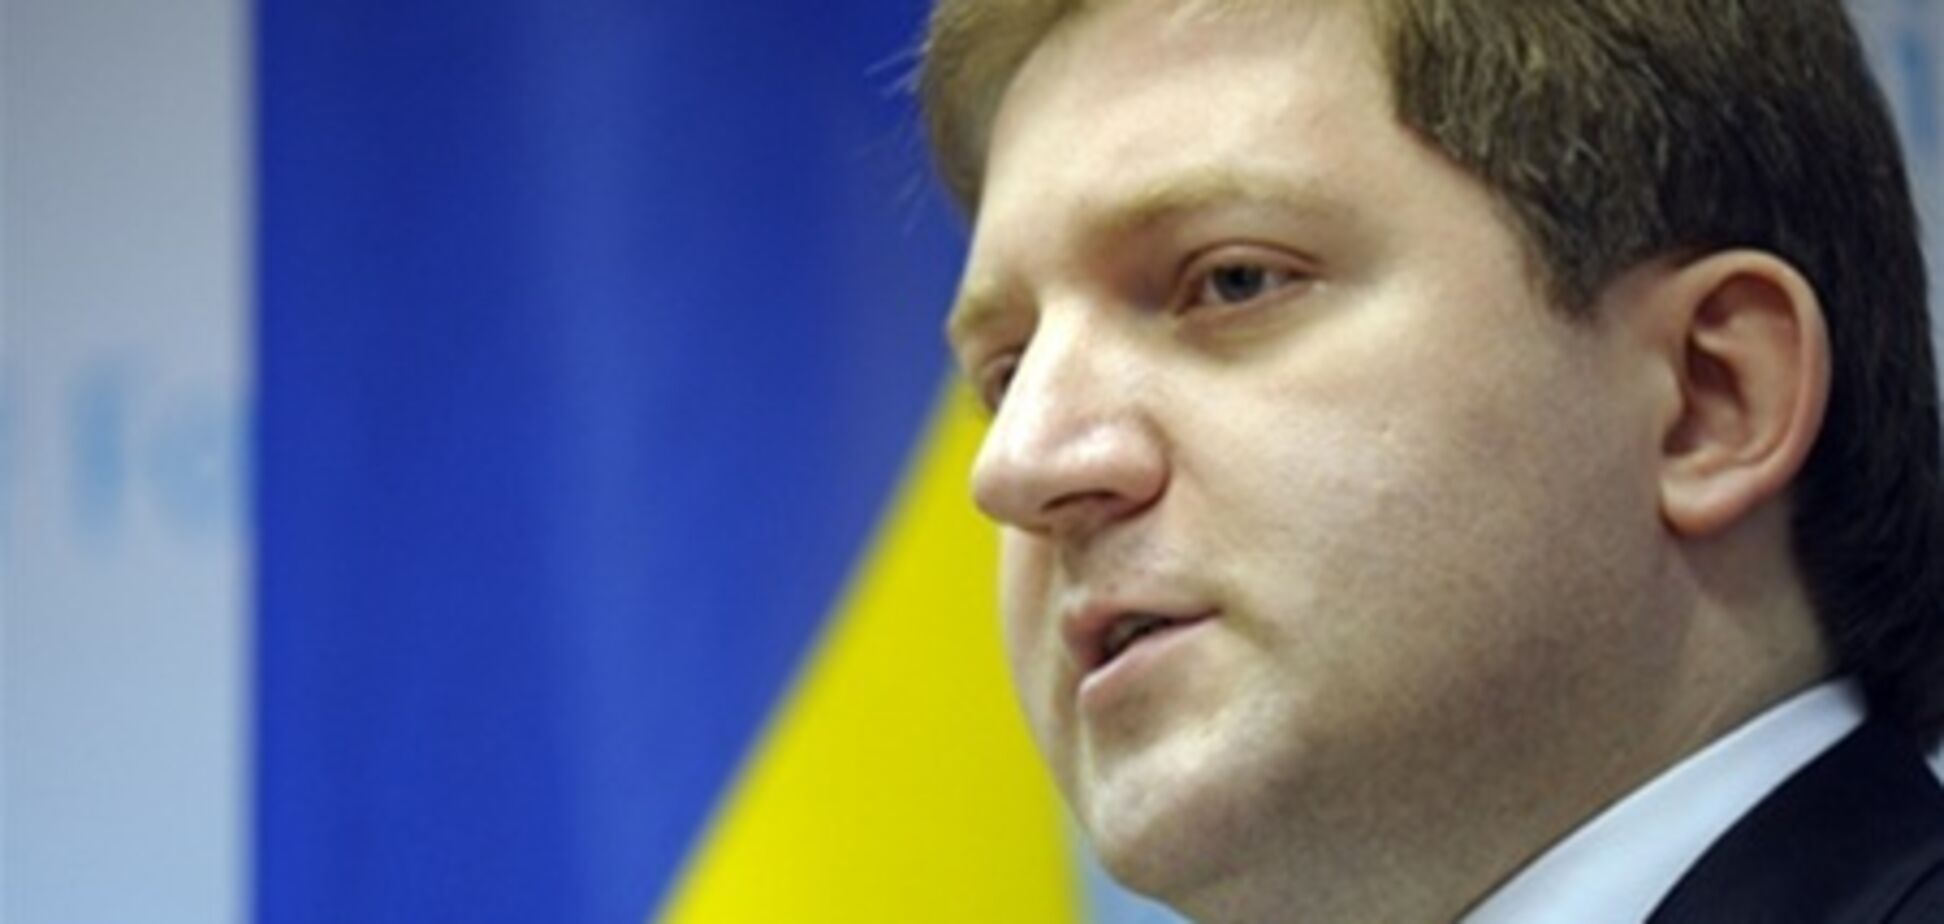 МИД обвинило британские СМИ в дискредитации Украины